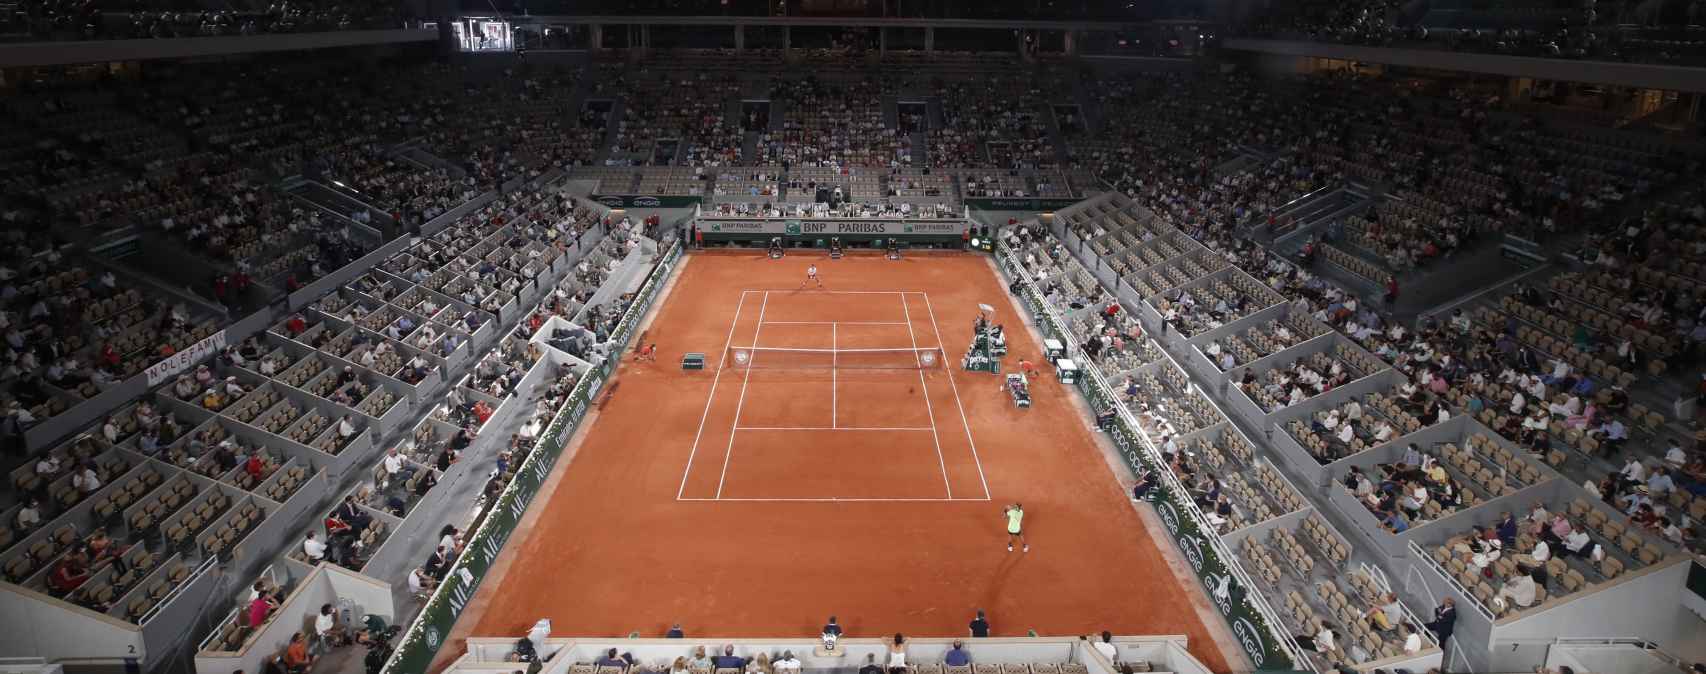 Pista de Roland Garros durante el Djokovic - Nadal